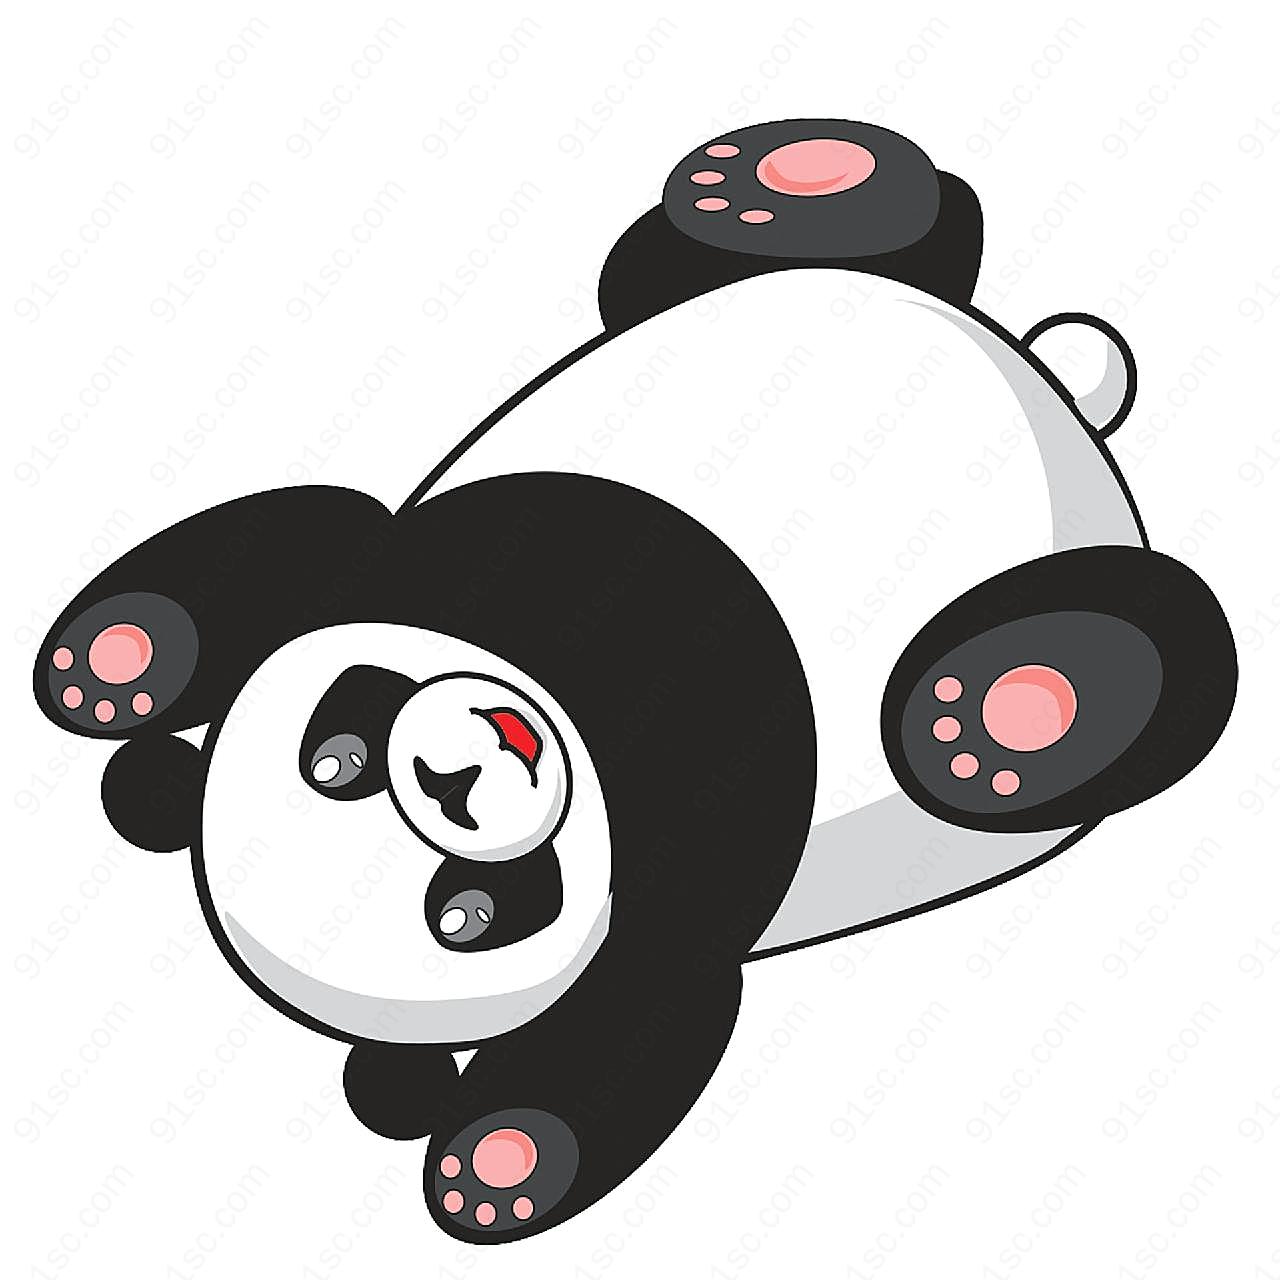 可爱卡通熊猫图片摄影高清